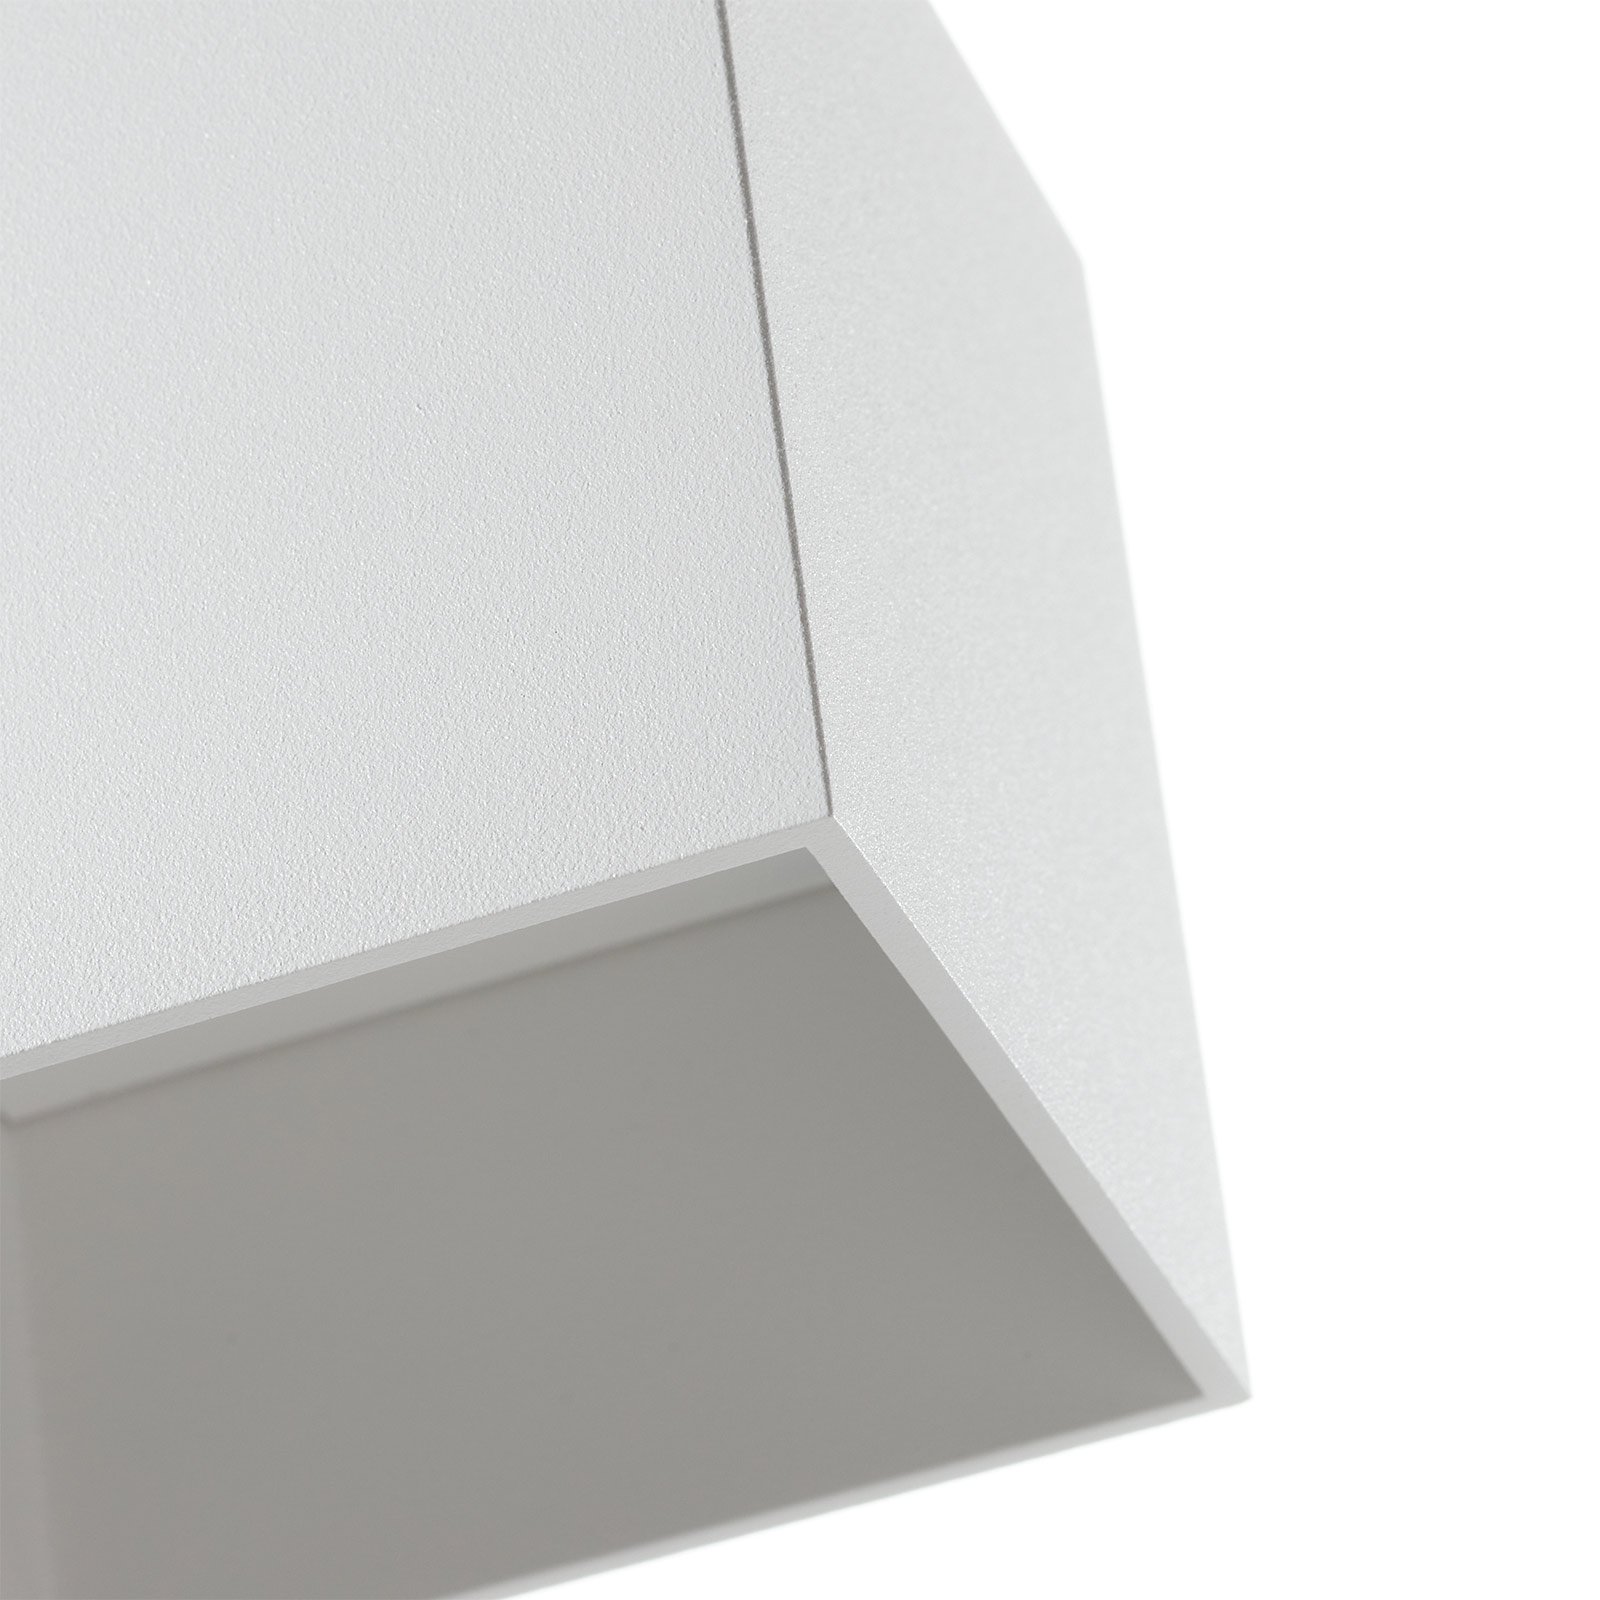 WEVER & DUCRÉ Box 1.0 PAR16 Deckenlampe weiß